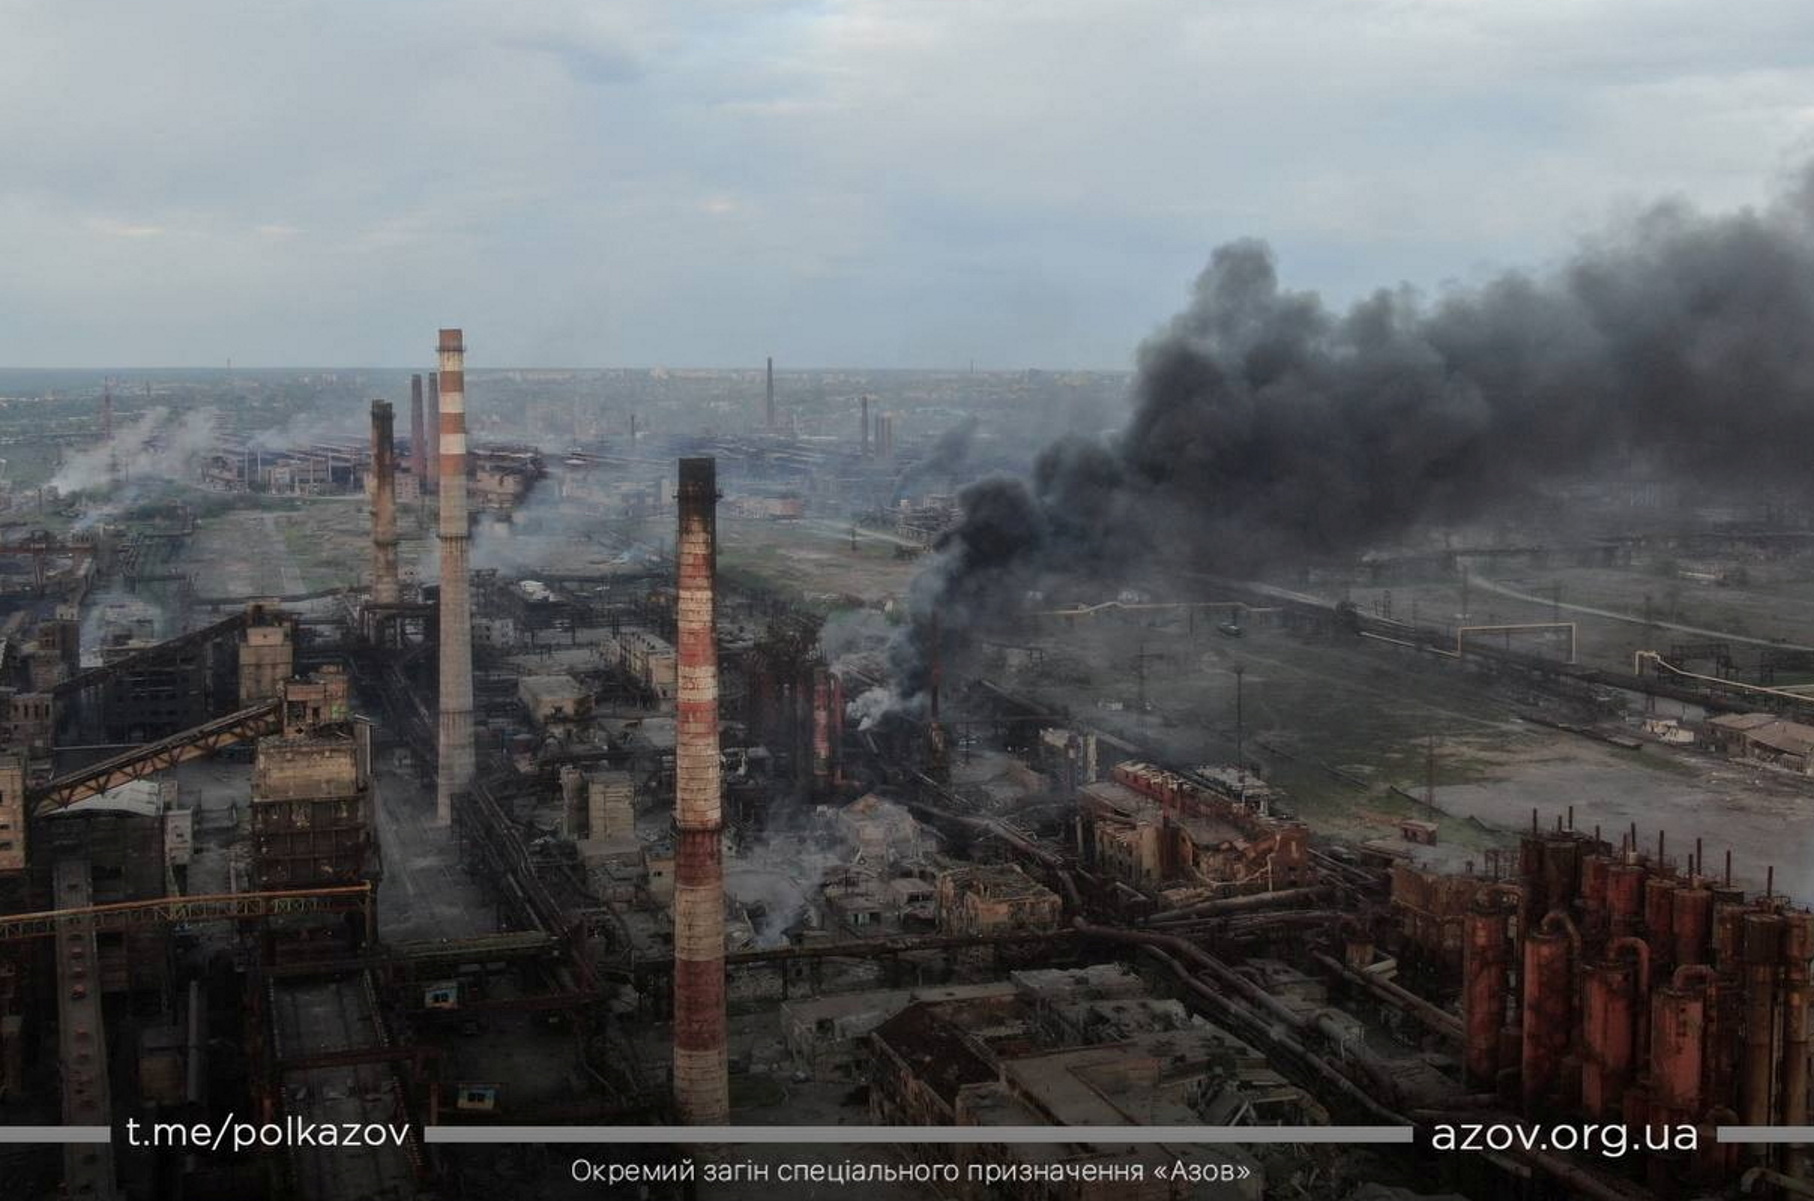 Πόλεμος στην Ουκρανία: Δεν έχουν μείνει άμαχοι στο εργοστάσιο Αζοφστάλ λένε οι αυτονομιστές του Ντονέτσκ